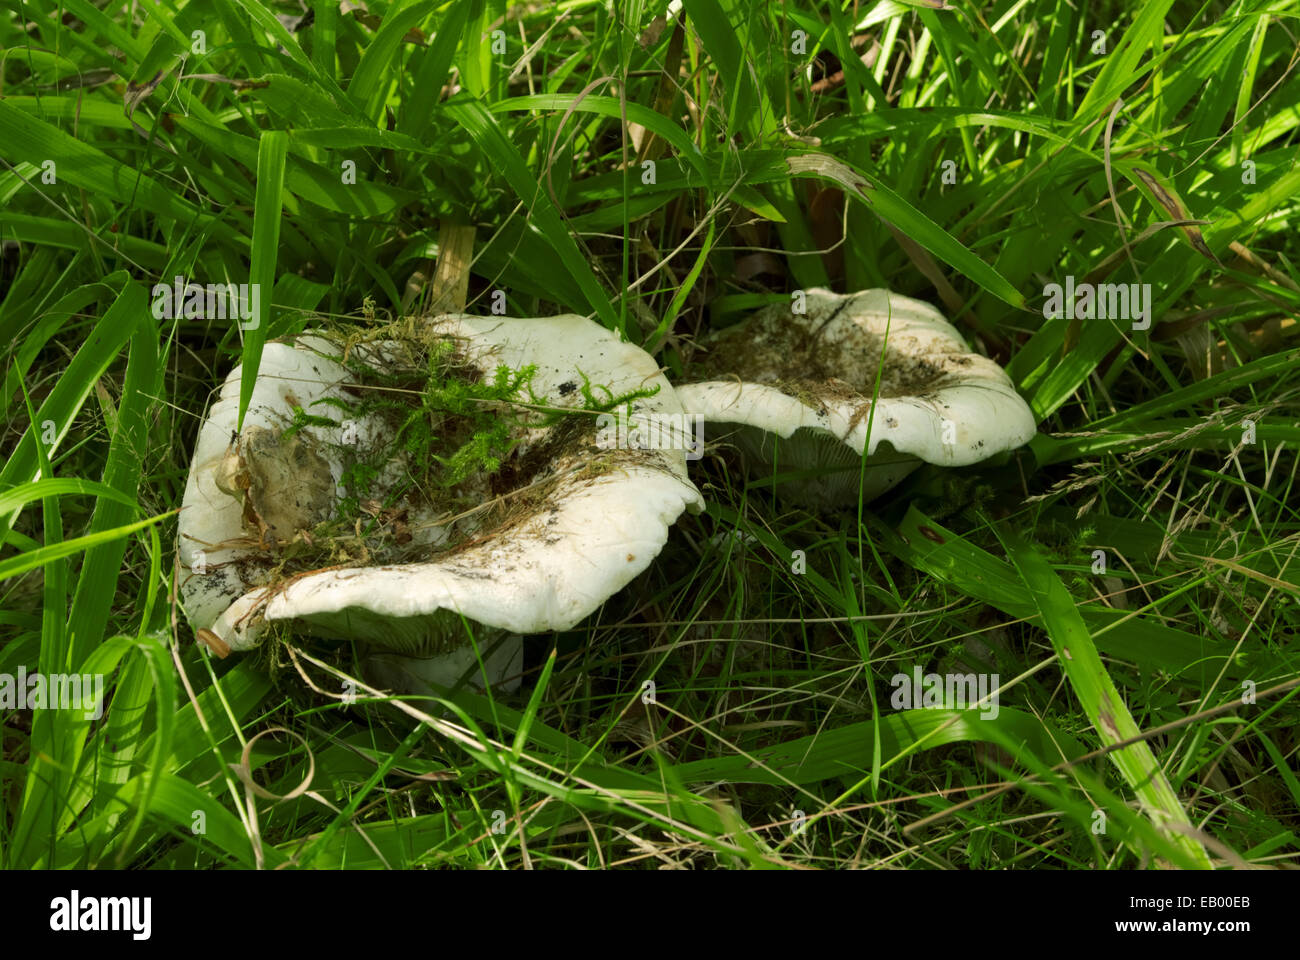 Lactifluus piperatuspeppery milk-cap mushrooms in the forest Stock Photo